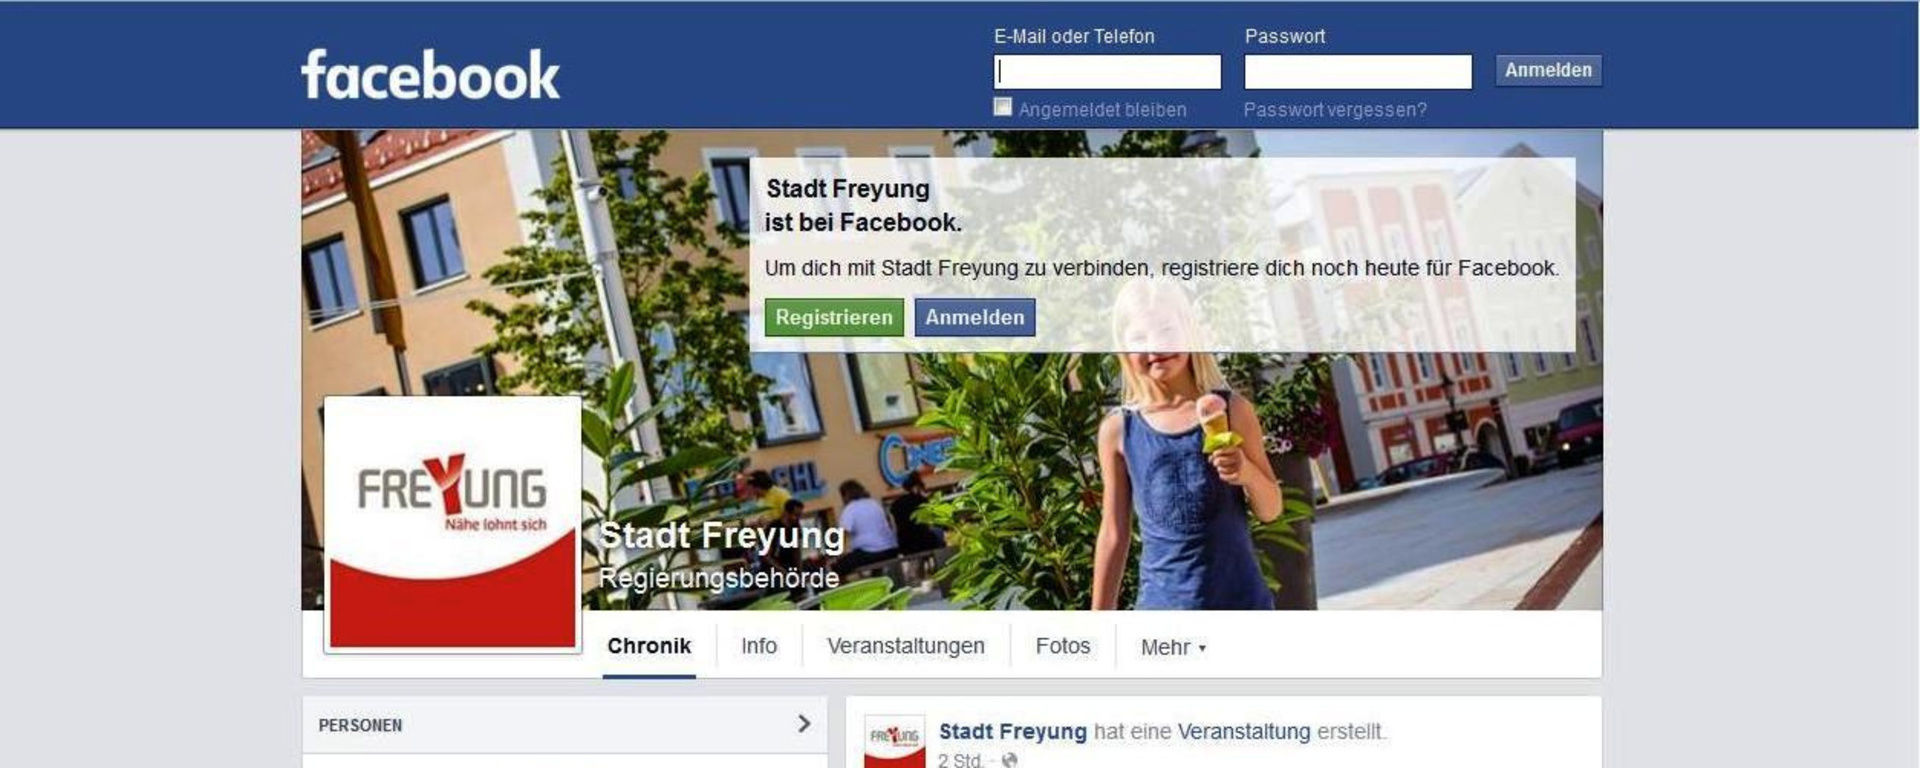 Die Facebook-Seite der Stadt Freyung